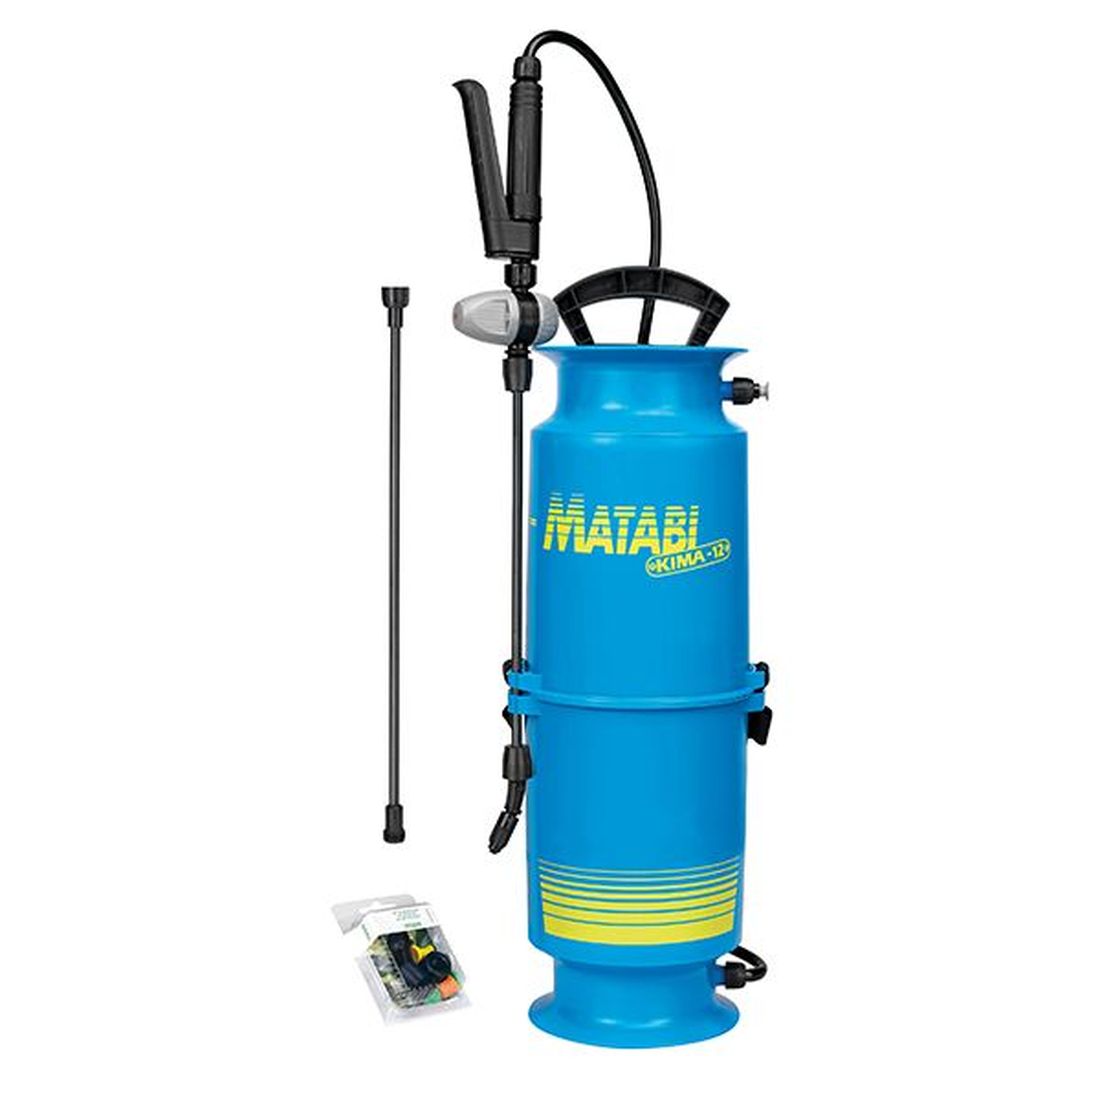 Matabi Kima 12 Sprayer + Pressure Regulator 8 litre                                    